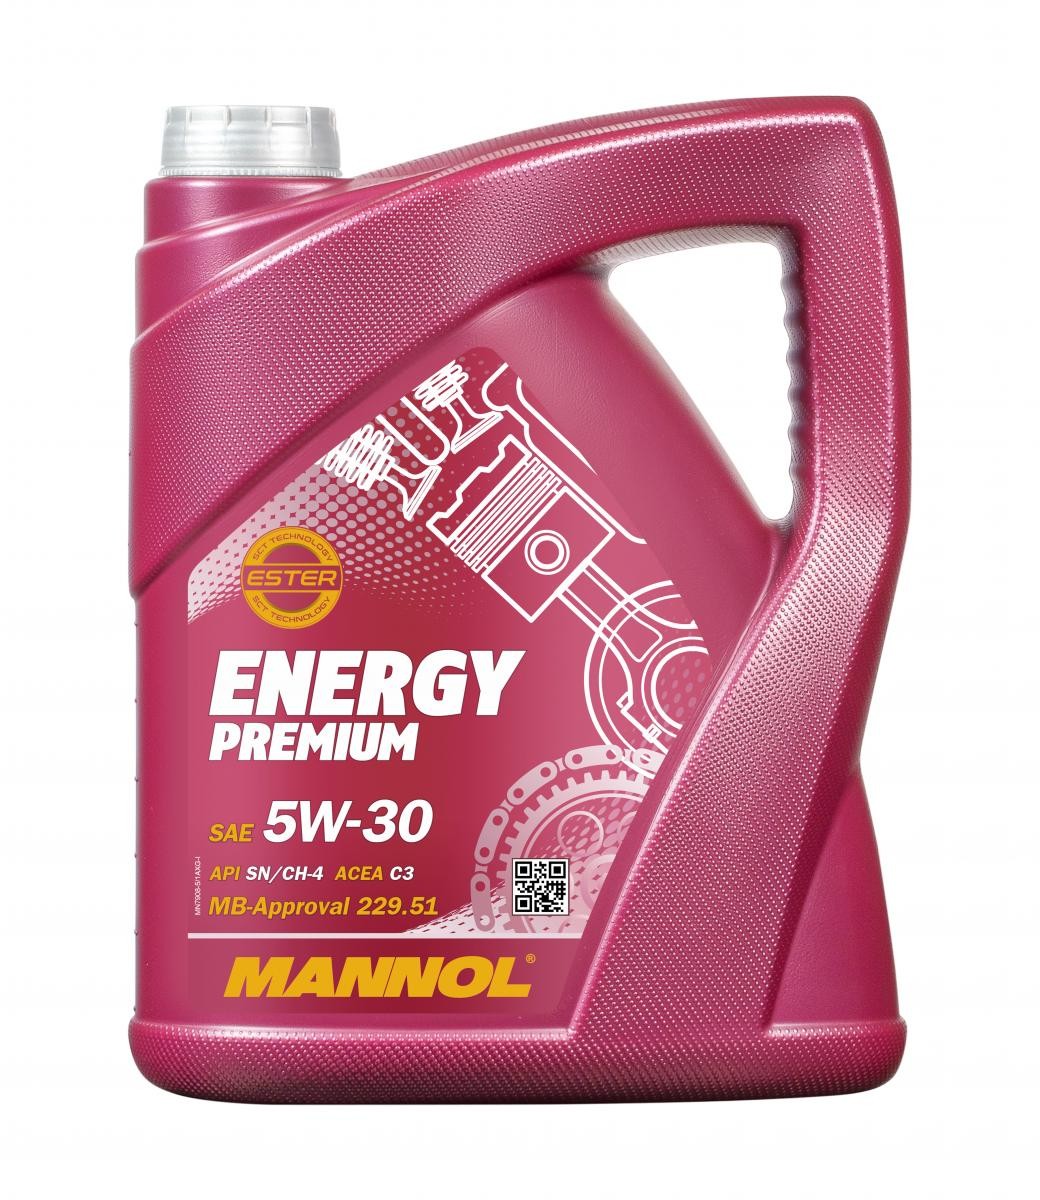 MN7908-5 MANNOL ENERGY PREMIUM 5W-30, 5L, Synthetische olie Motorolie MN7908-5 koop goedkoop